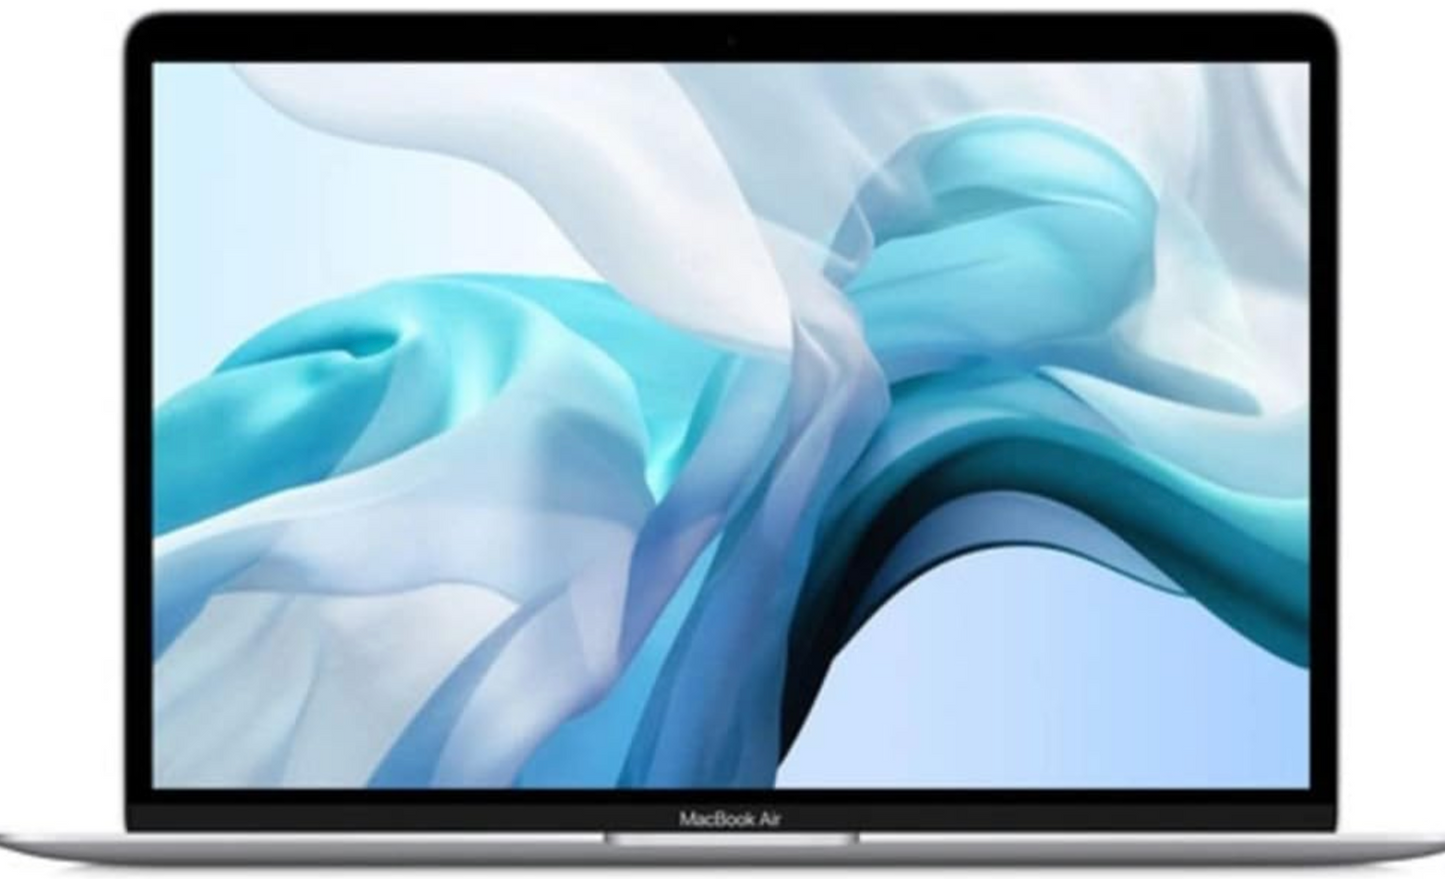 Apple Mac book air 2018 honest review